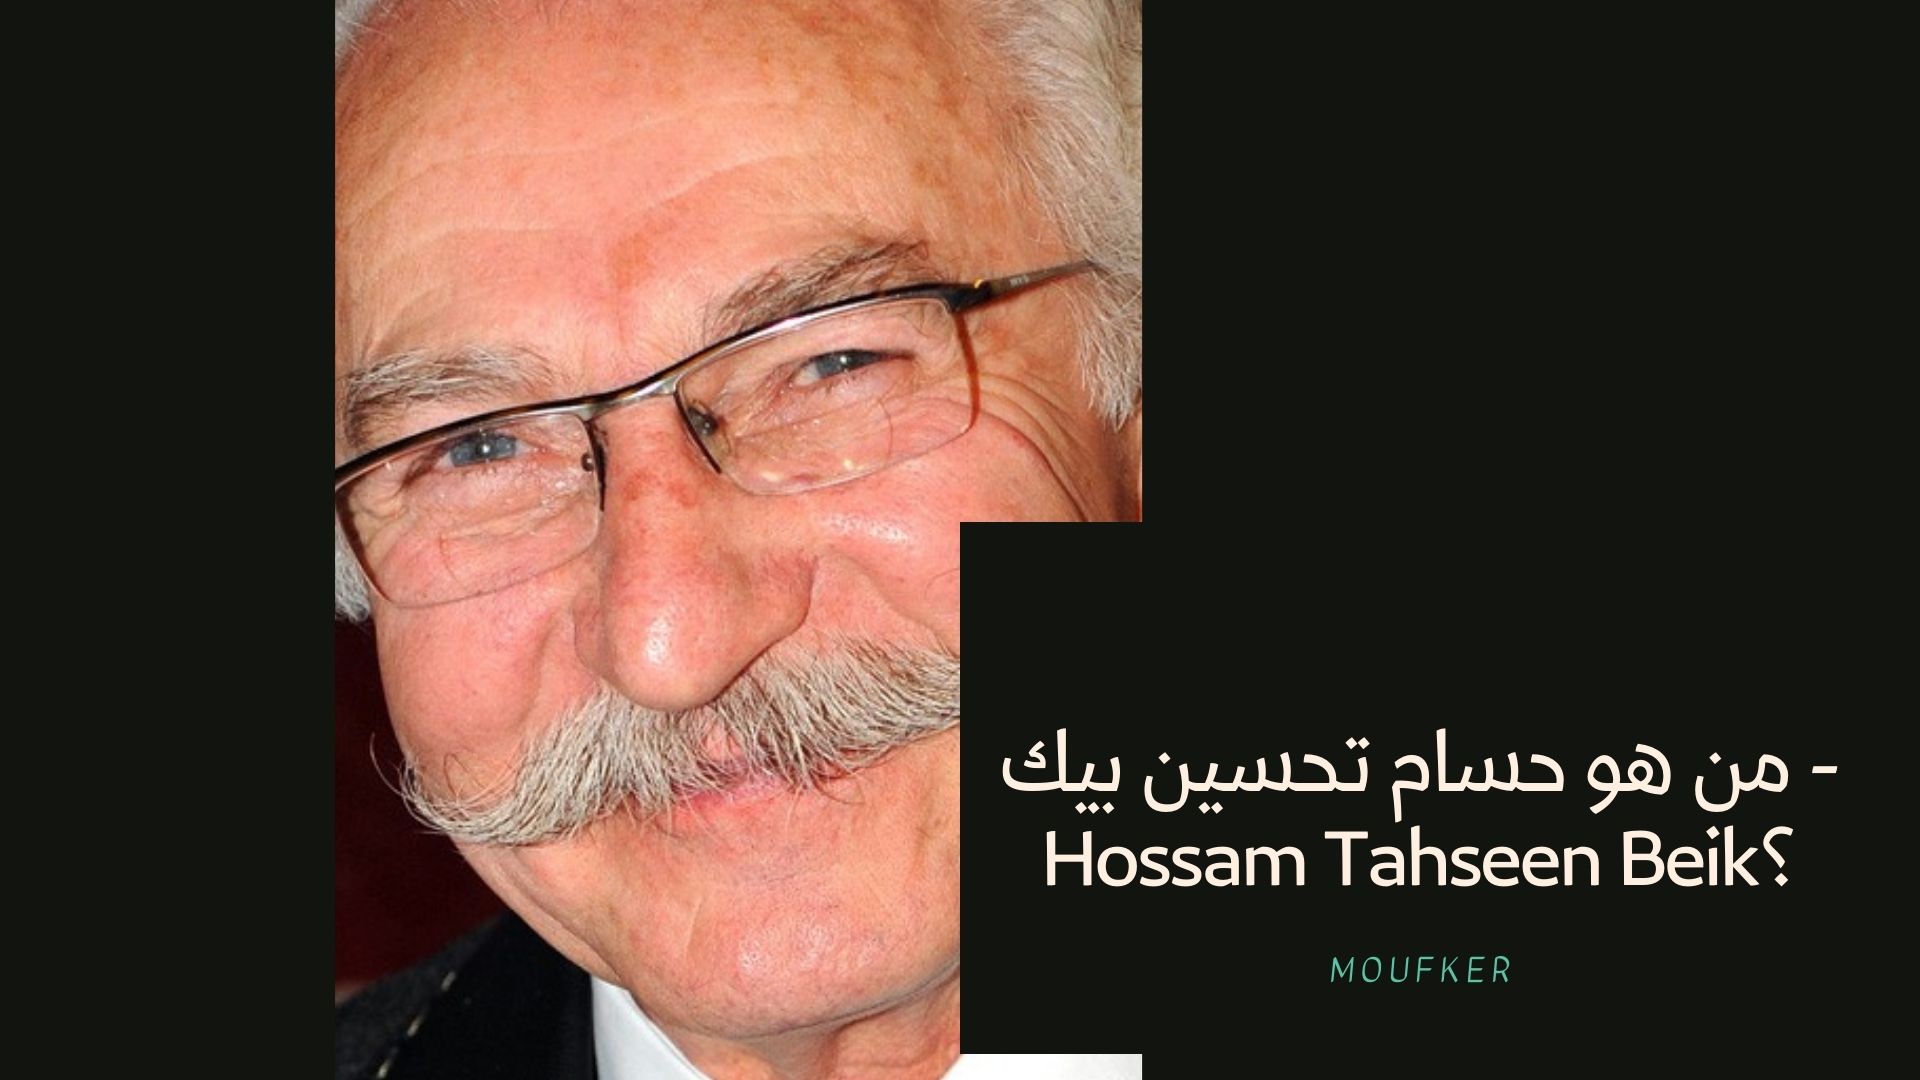 من هو حسام تحسين بيك – Hossam Tahseen Beik؟